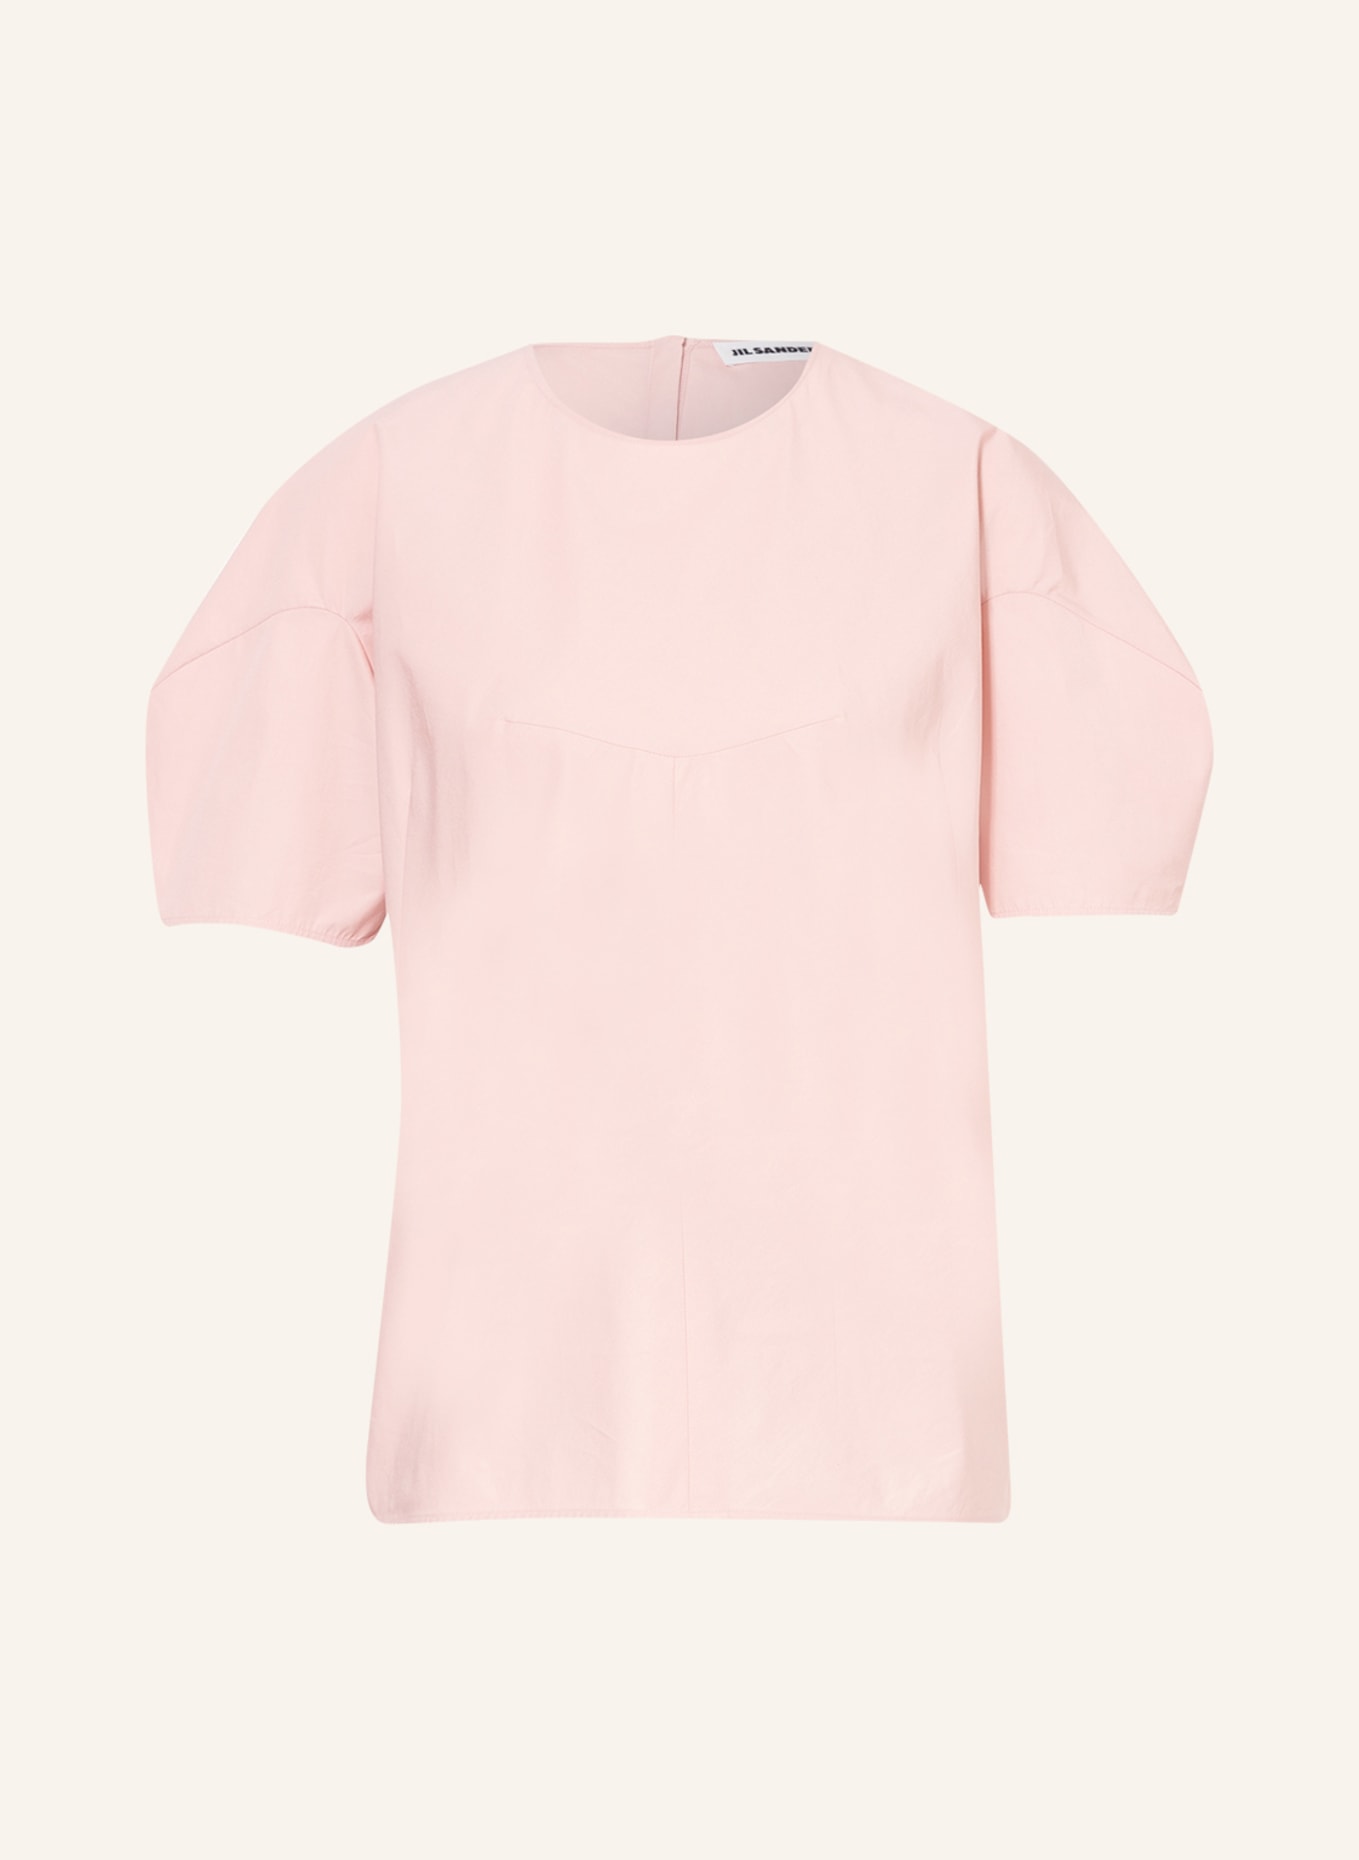 JIL SANDER Blouse-style shirt, Color: LIGHT PINK (Image 1)